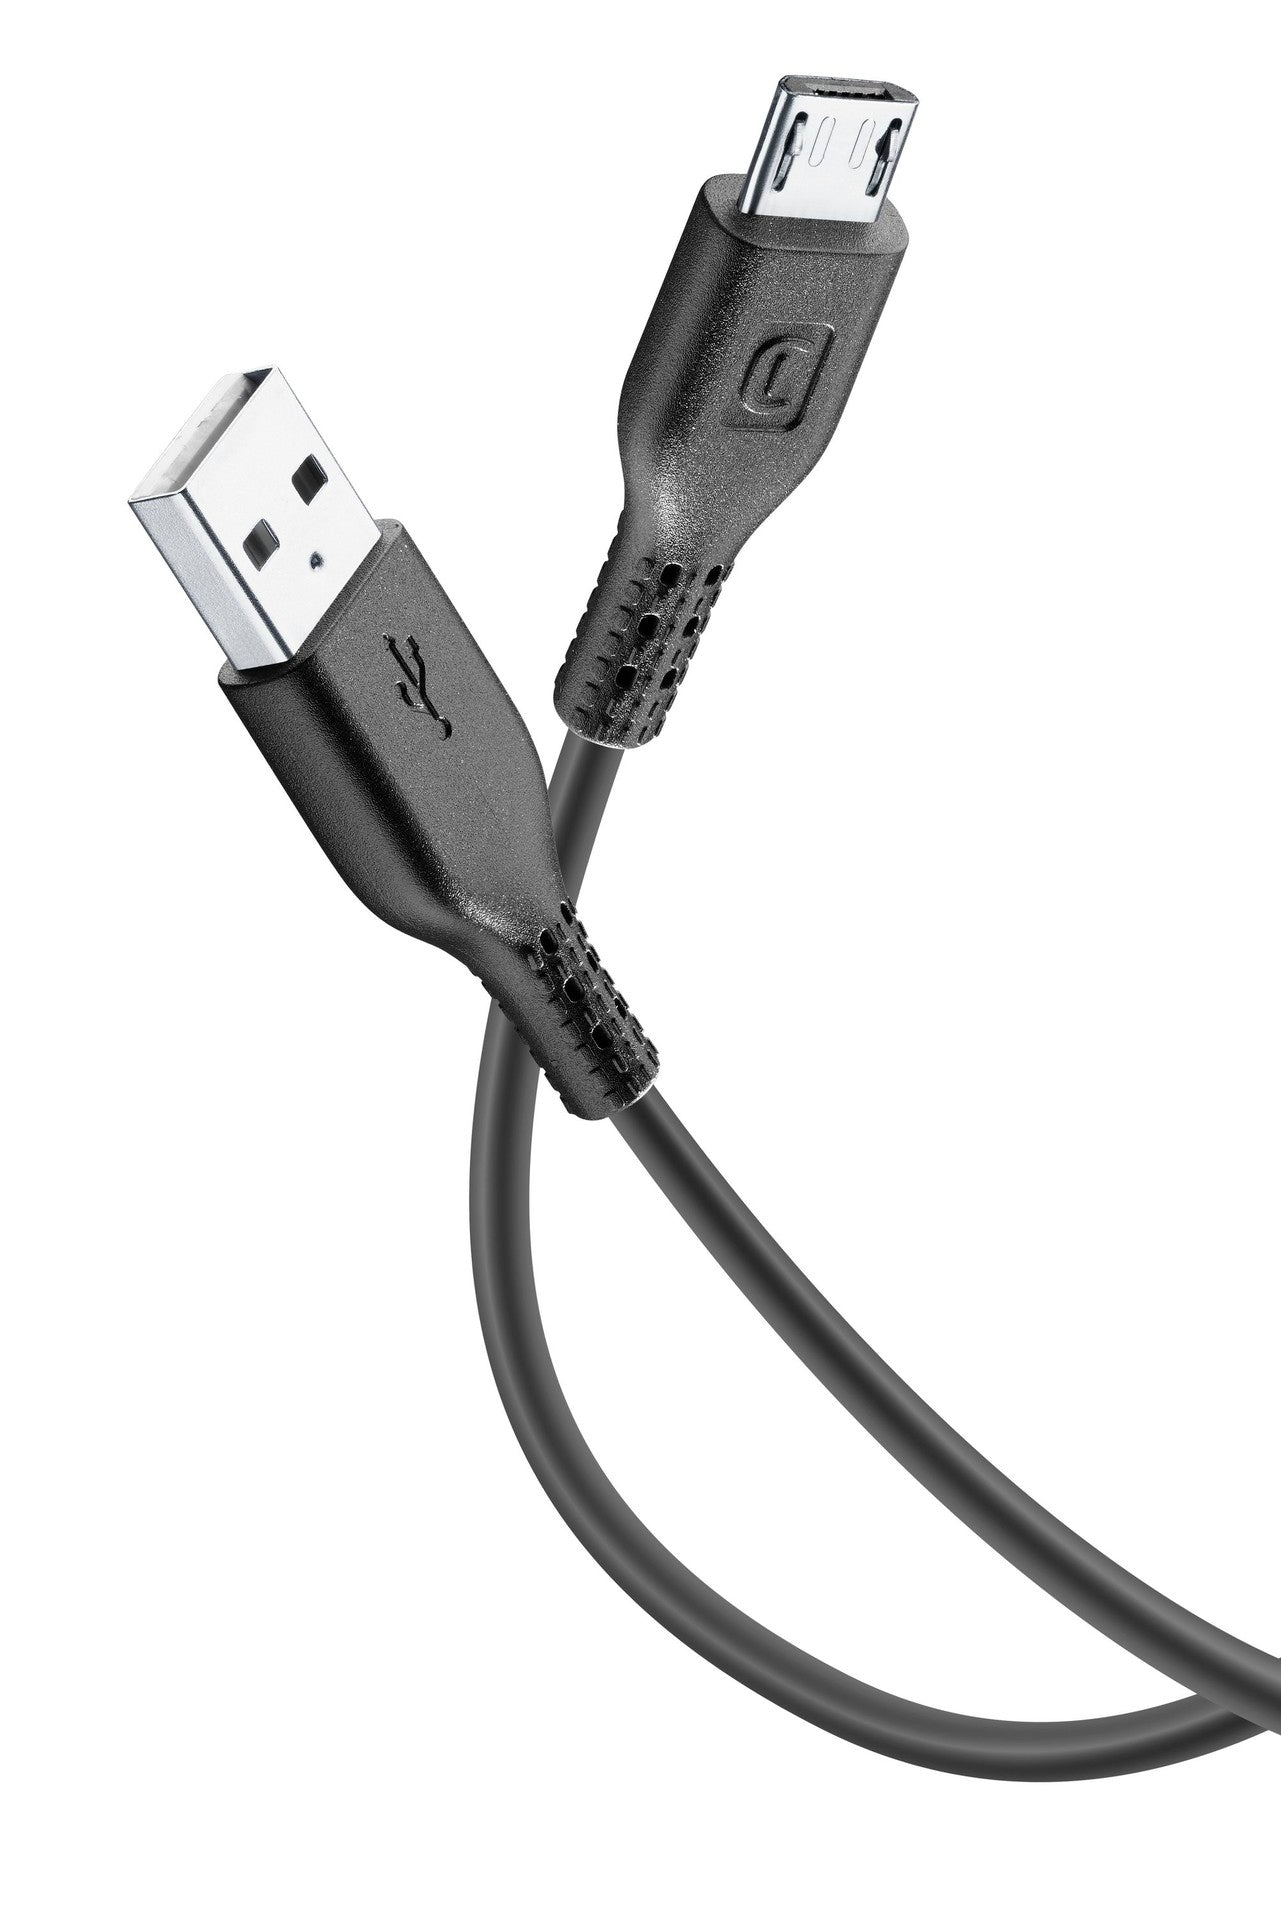 PS4 CABO COMANDO MICRO USB 1.8M